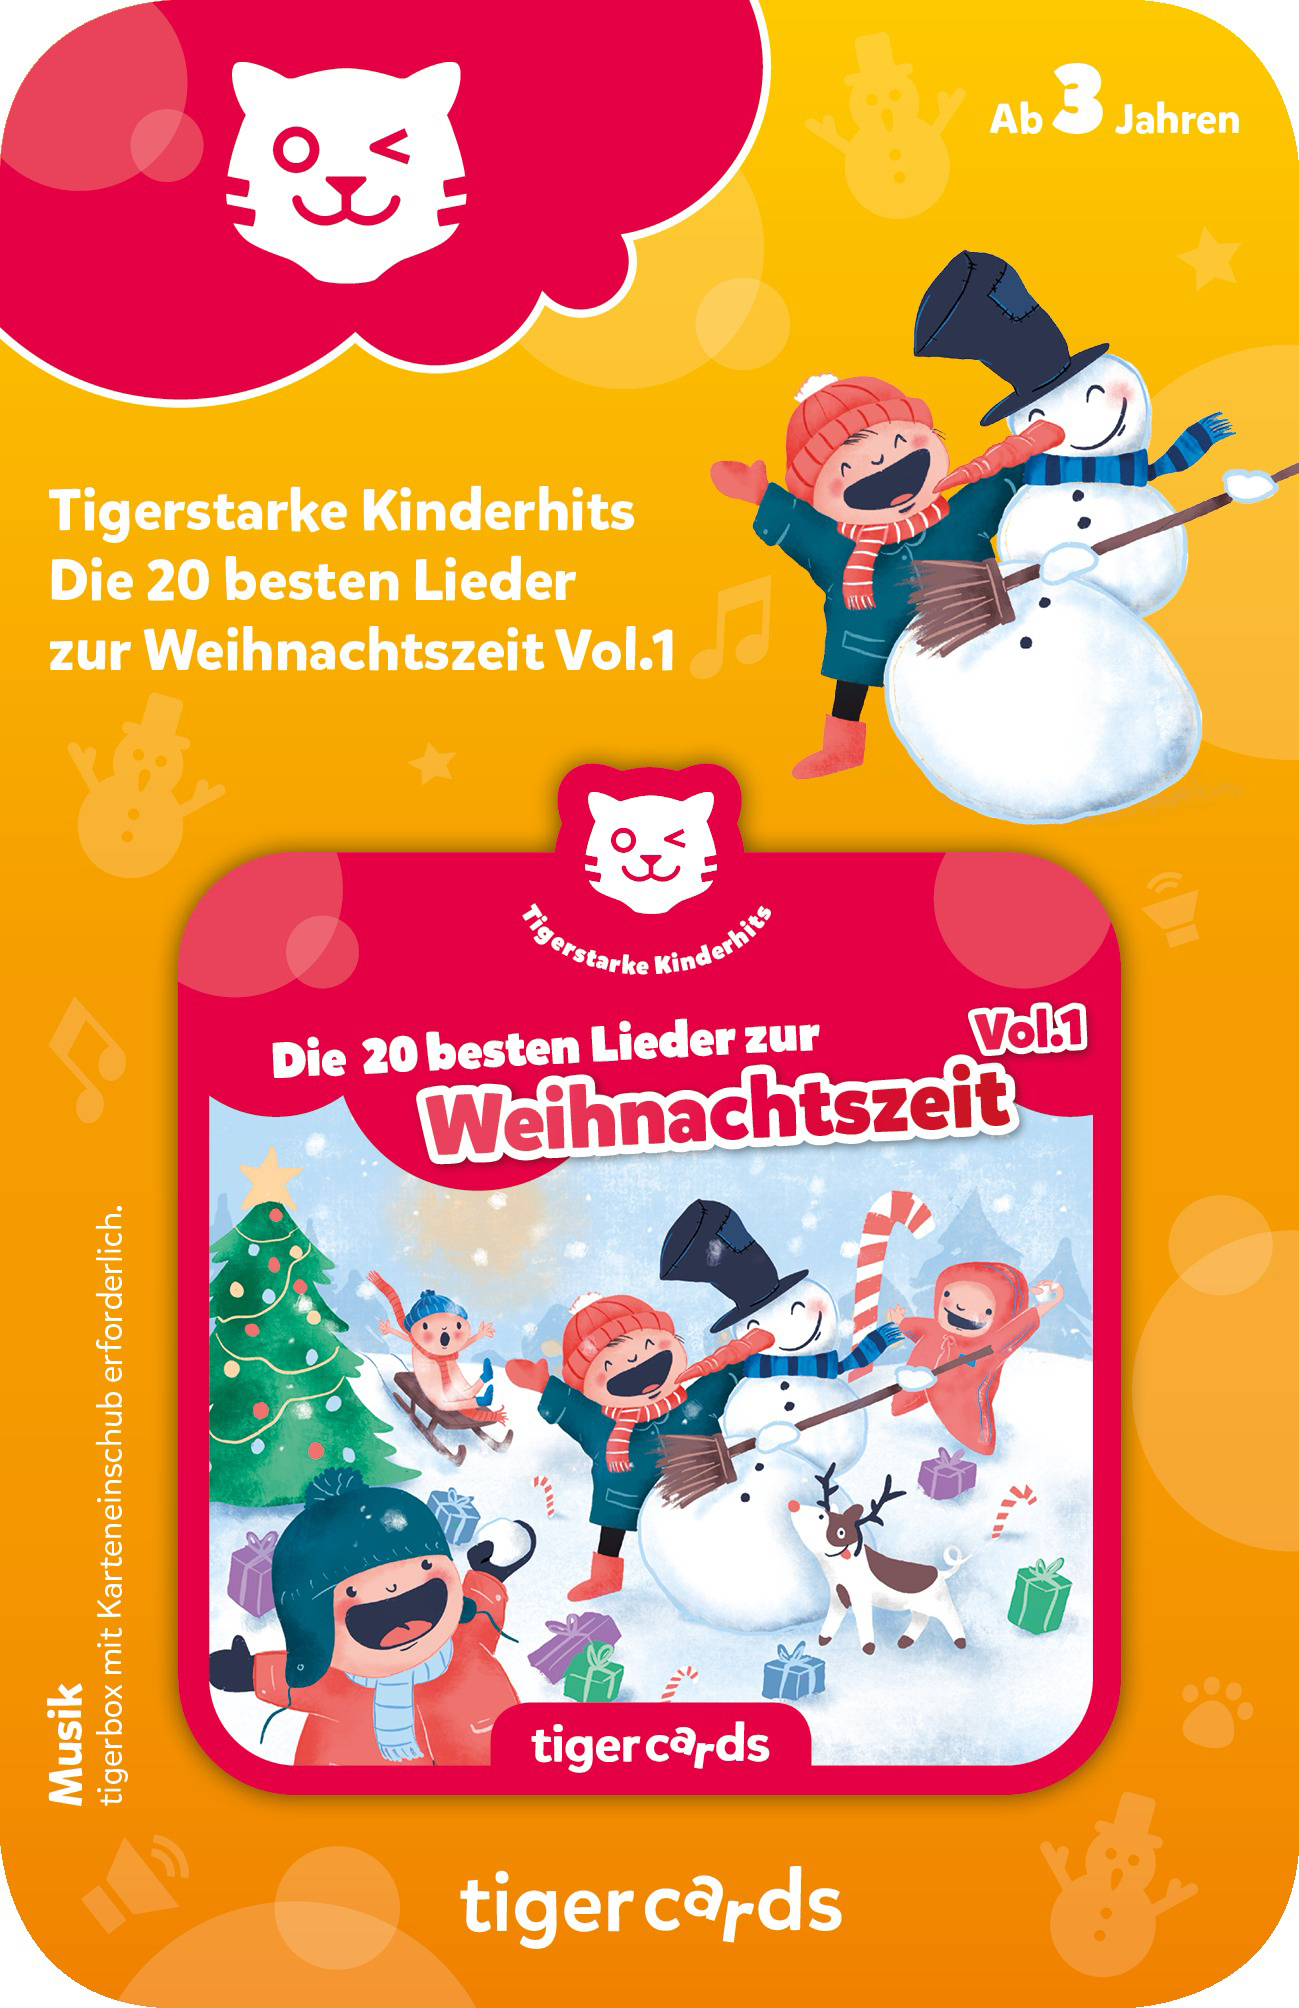 TIGERMEDIA zur Kinderhits Vol.1 Tigercard, Lieder Tigercard Mehrfarbig - Die - Tigerstarke besten 20 Weihnachtszeit